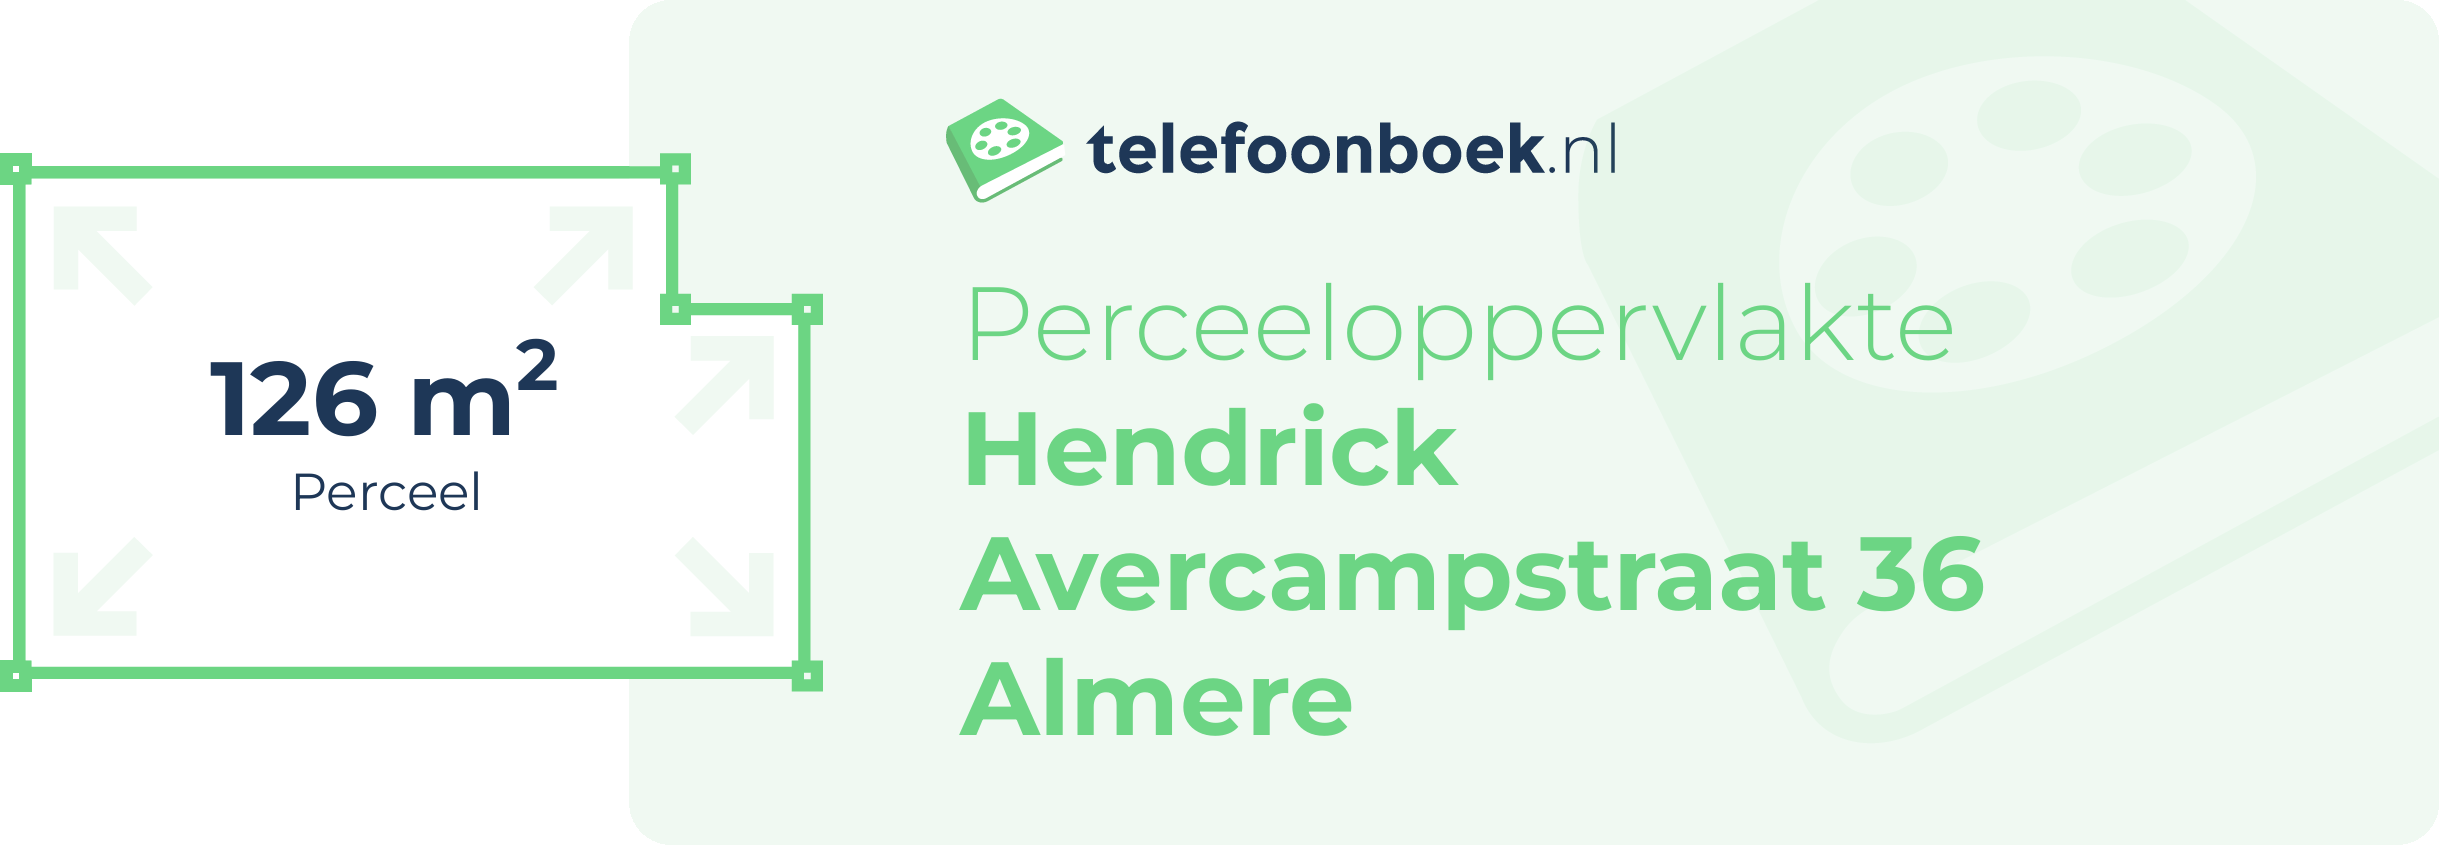 Perceeloppervlakte Hendrick Avercampstraat 36 Almere